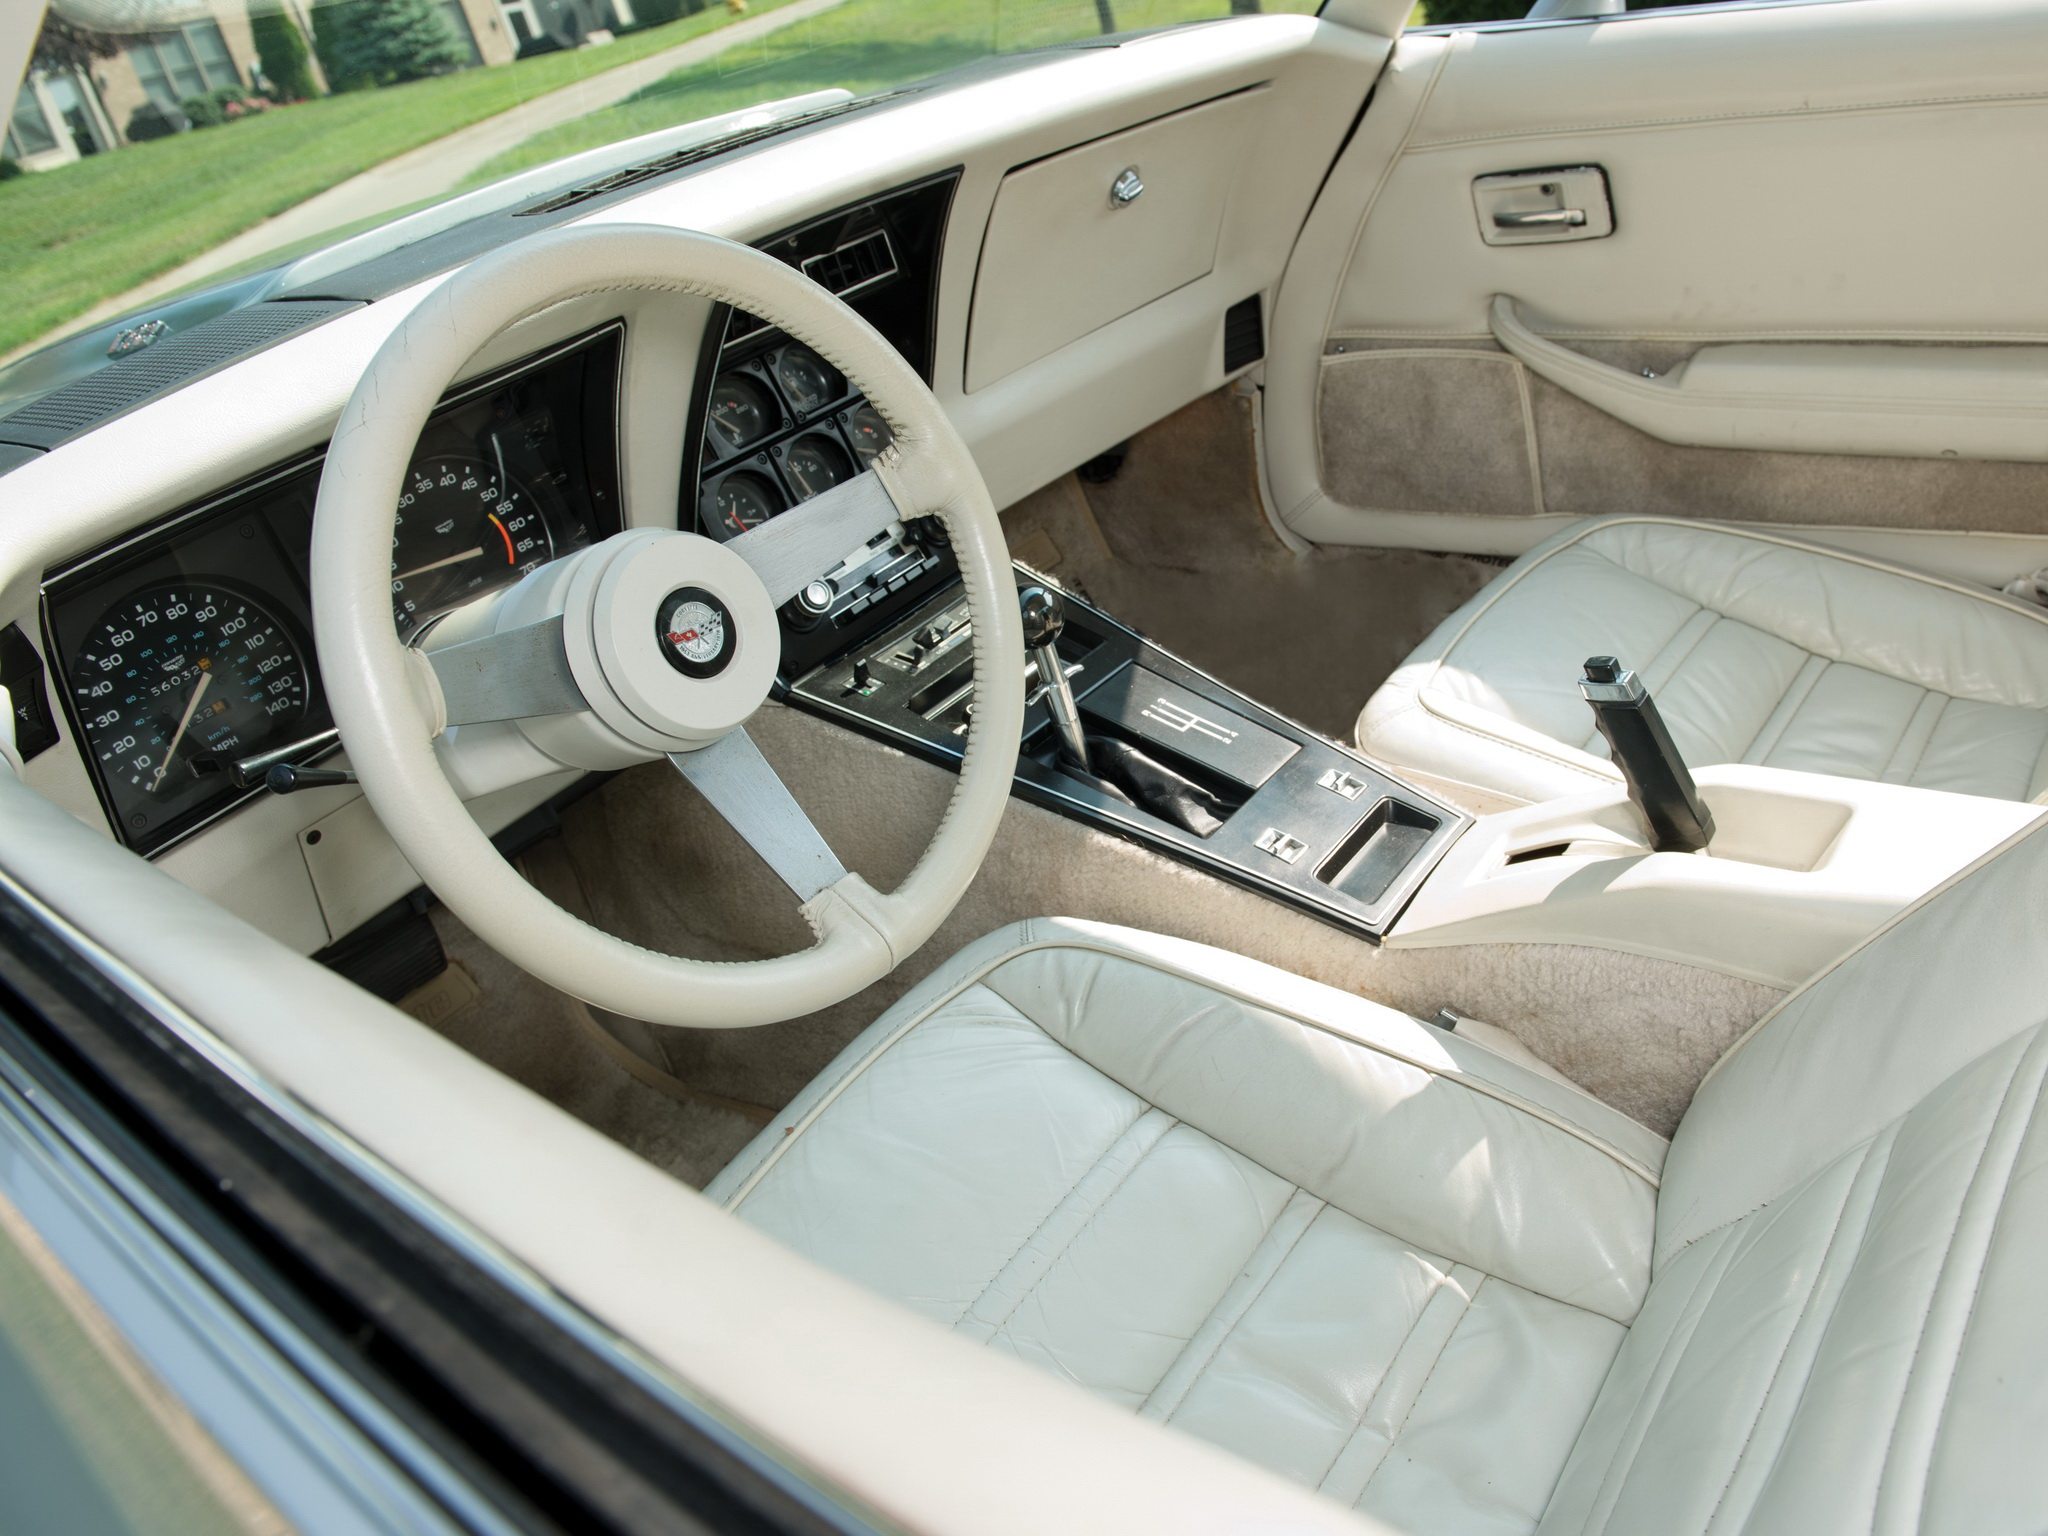 The interior of the 1978 Corvette